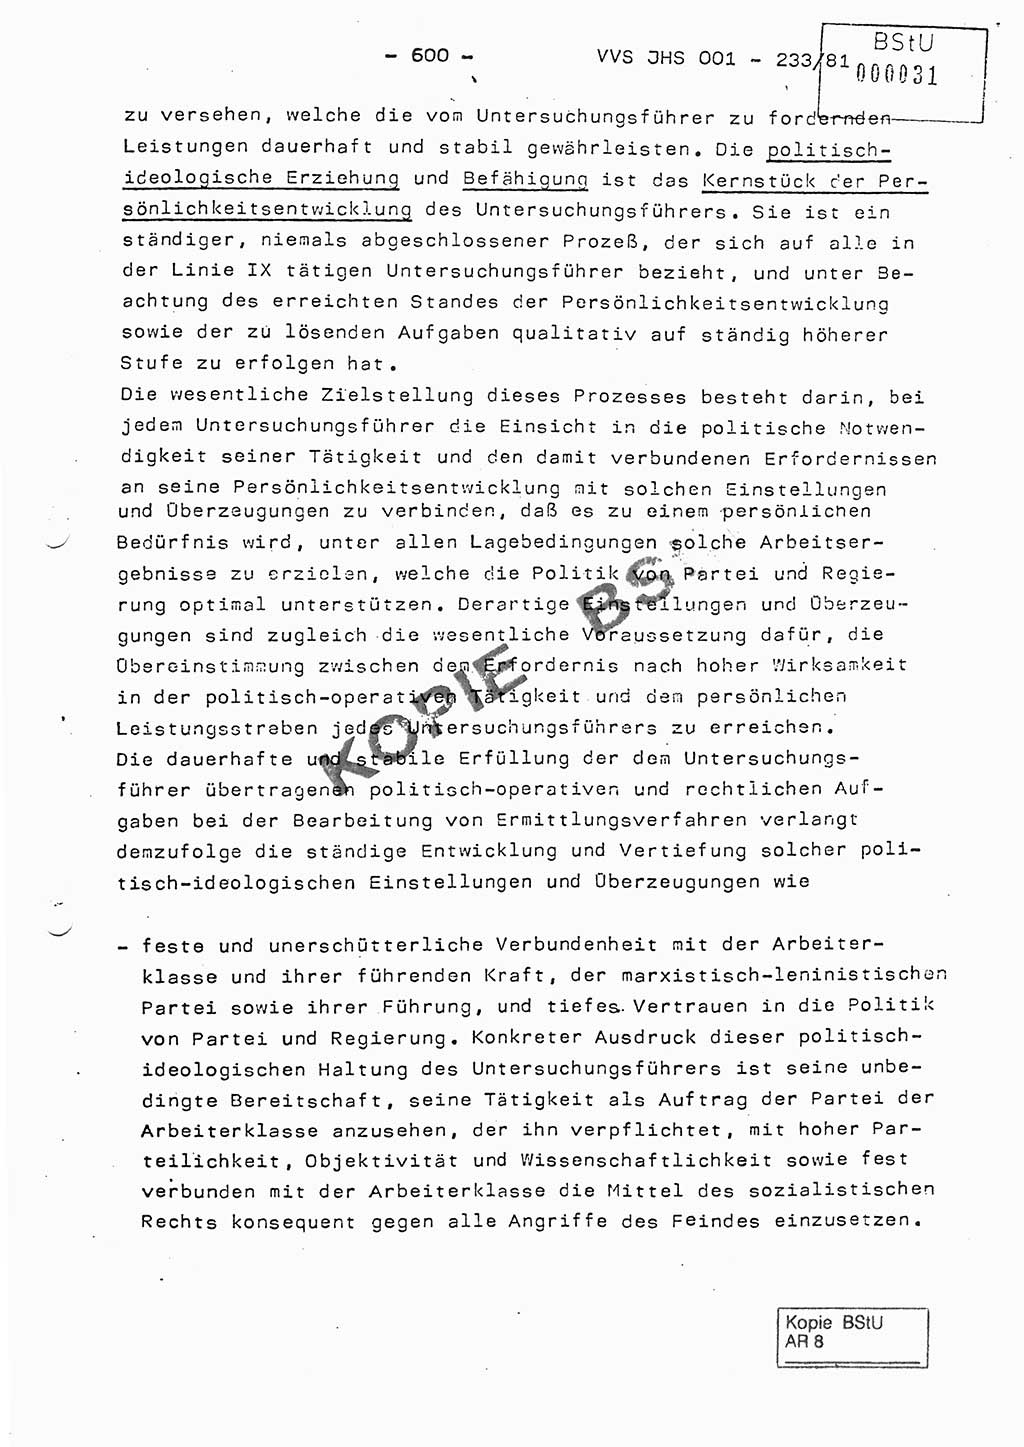 Dissertation Oberstleutnant Horst Zank (JHS), Oberstleutnant Dr. Karl-Heinz Knoblauch (JHS), Oberstleutnant Gustav-Adolf Kowalewski (HA Ⅸ), Oberstleutnant Wolfgang Plötner (HA Ⅸ), Ministerium für Staatssicherheit (MfS) [Deutsche Demokratische Republik (DDR)], Juristische Hochschule (JHS), Vertrauliche Verschlußsache (VVS) o001-233/81, Potsdam 1981, Blatt 600 (Diss. MfS DDR JHS VVS o001-233/81 1981, Bl. 600)